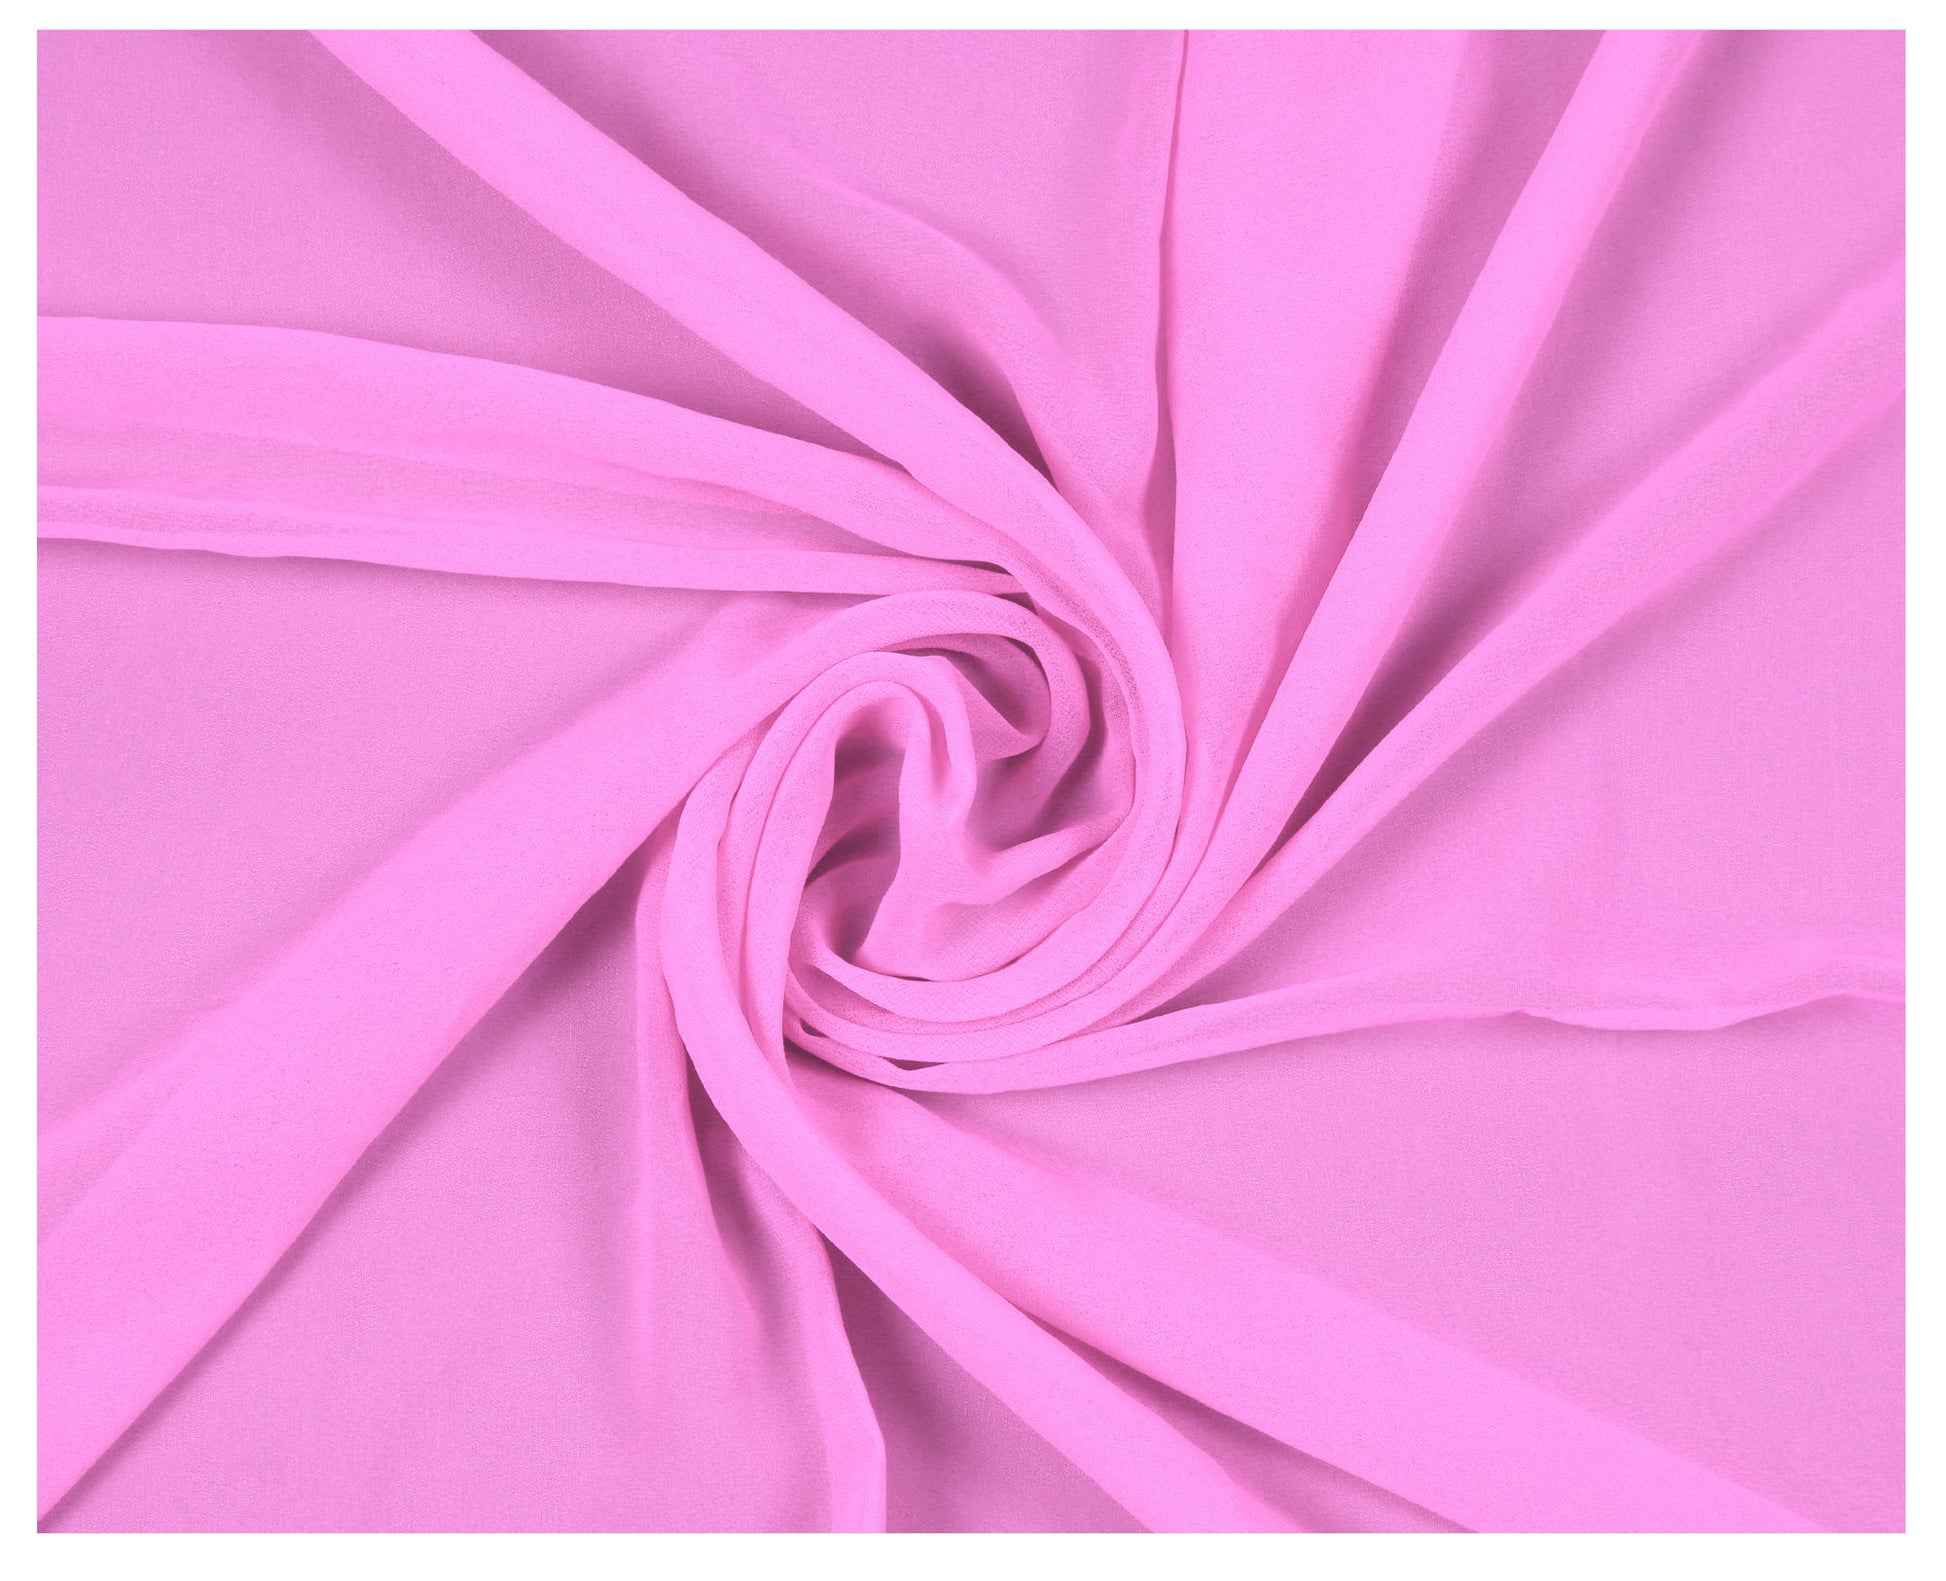 Bubblegum Pink,12221a16-bbbe-484d-a12f-1426f2fc0500